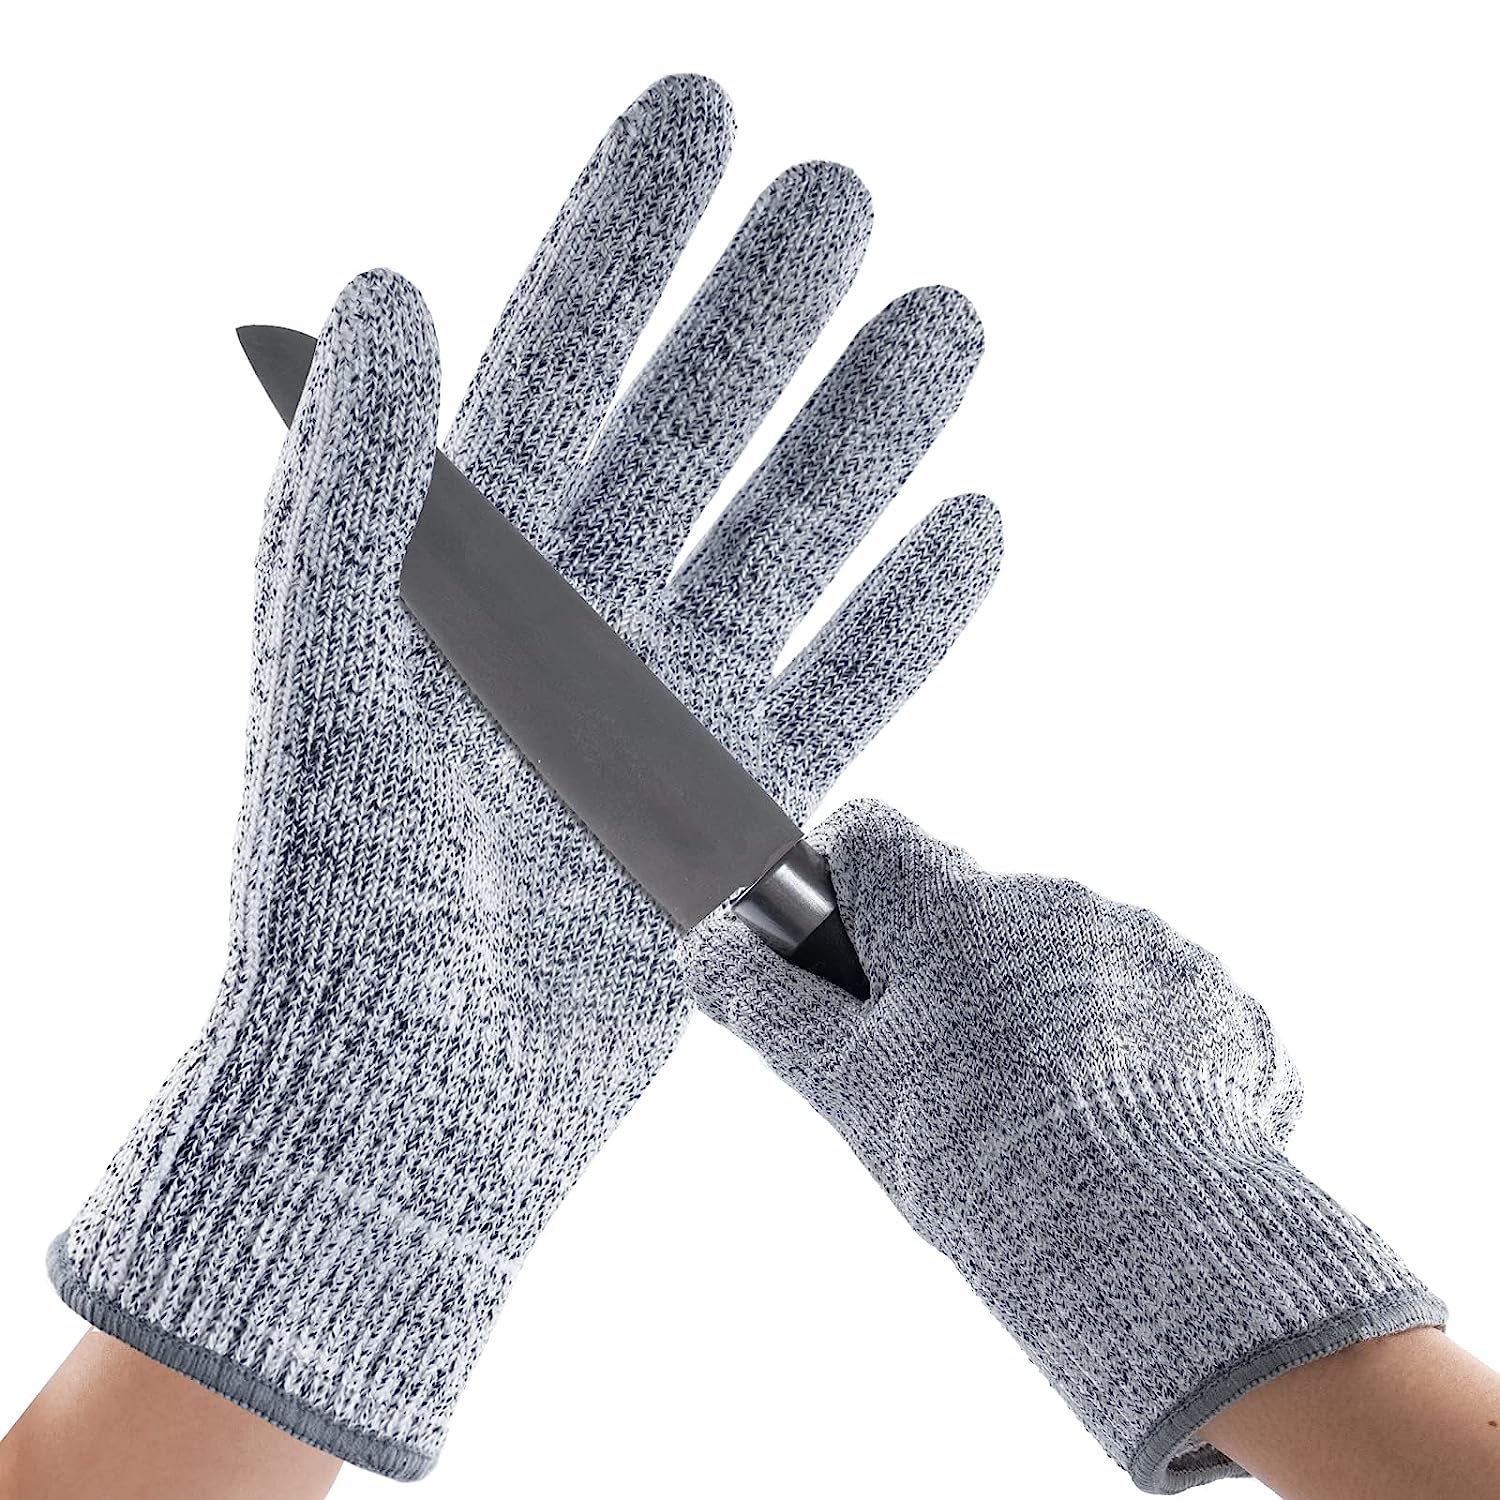 Bild zu ANDANDA Schnittschutz-Handschuhe mit Level 5 Schutz für 4,49€